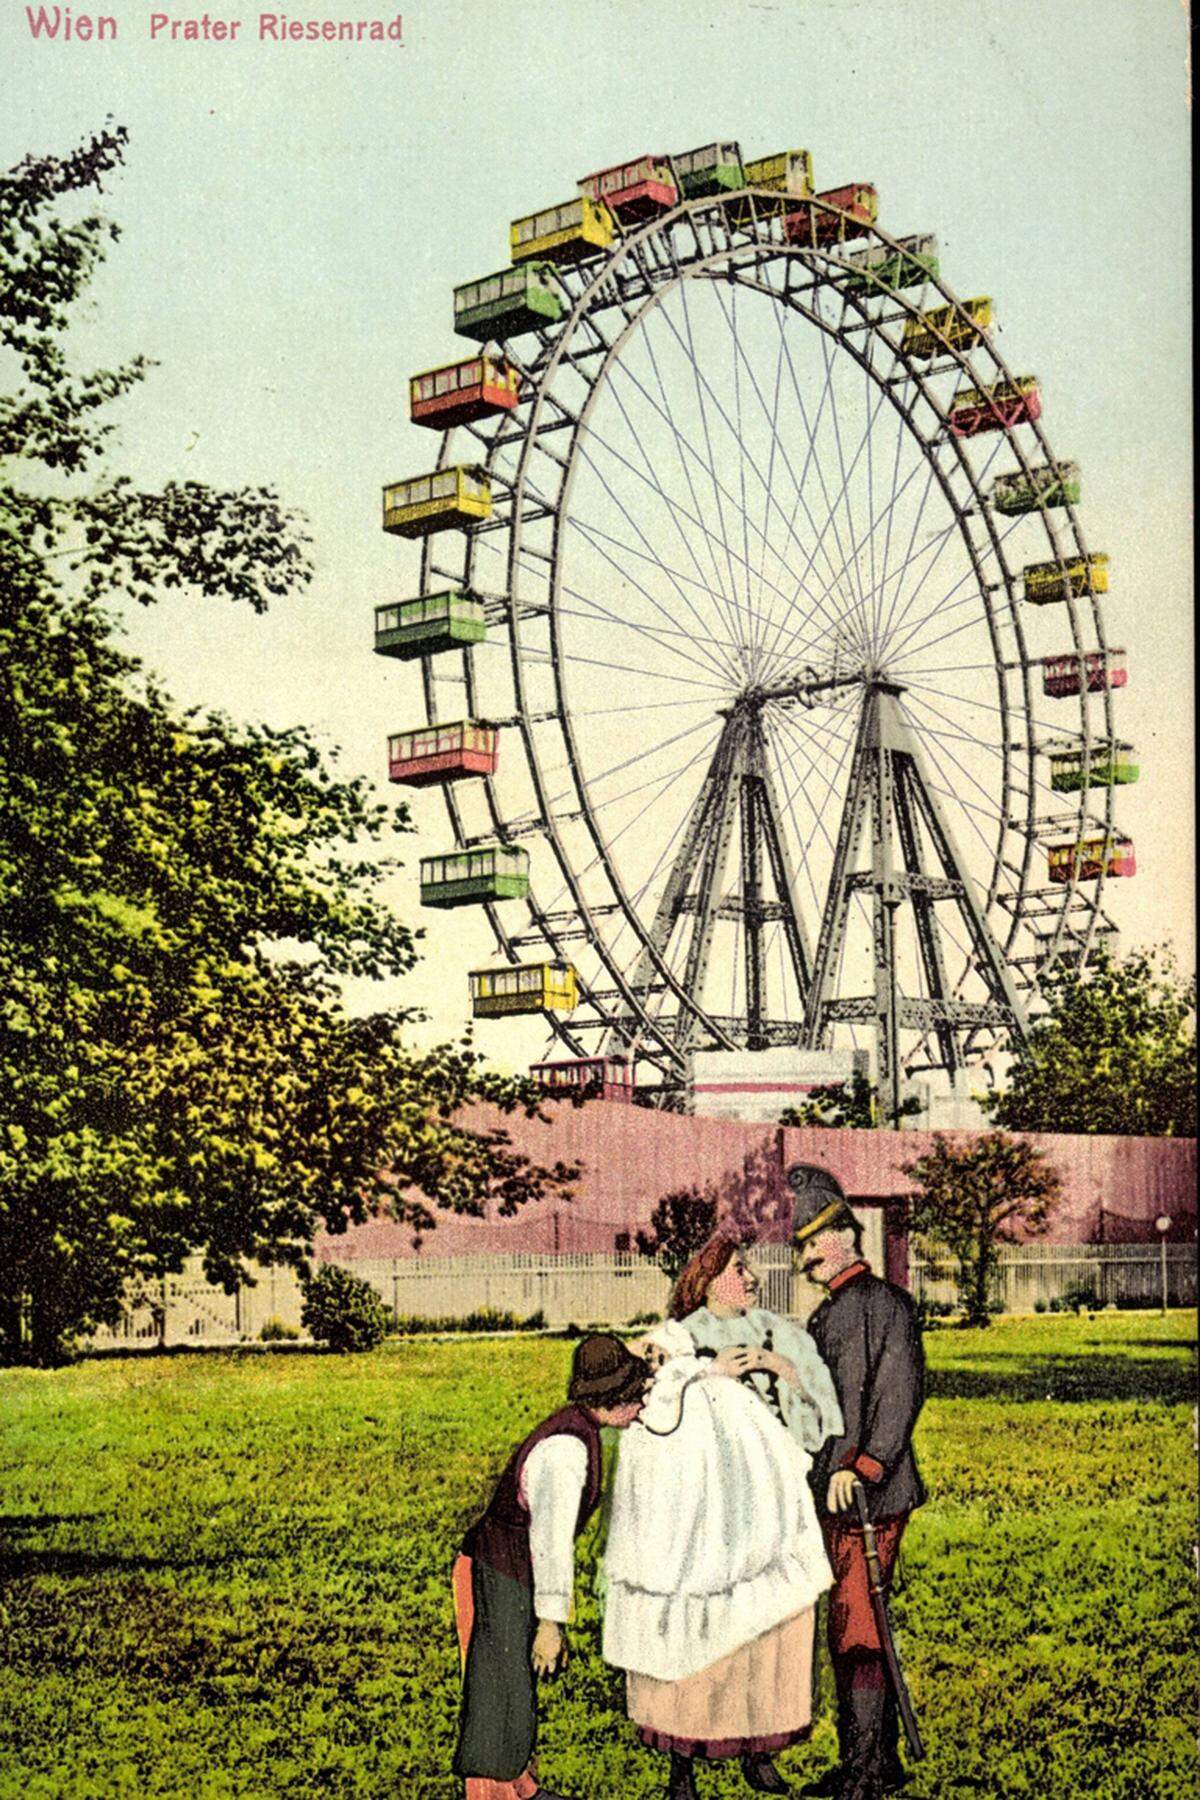 Große Veränderungen des Areals zog die Weltausstellung 1873 mit 53.000 Ausstellern nach sich. Als Zentrum wurde - am heutigen Standort der Wiener Messe - eine 84 Meter hohe Rotunde errichtet, die 1937 einem Brand zum Opfer fiel. Ende des 19. Jahrhunderts entstand das Vergnügungsareal "Venedig in Wien", in dessen Mitte 1897 das Riesenrad errichtet wurde.